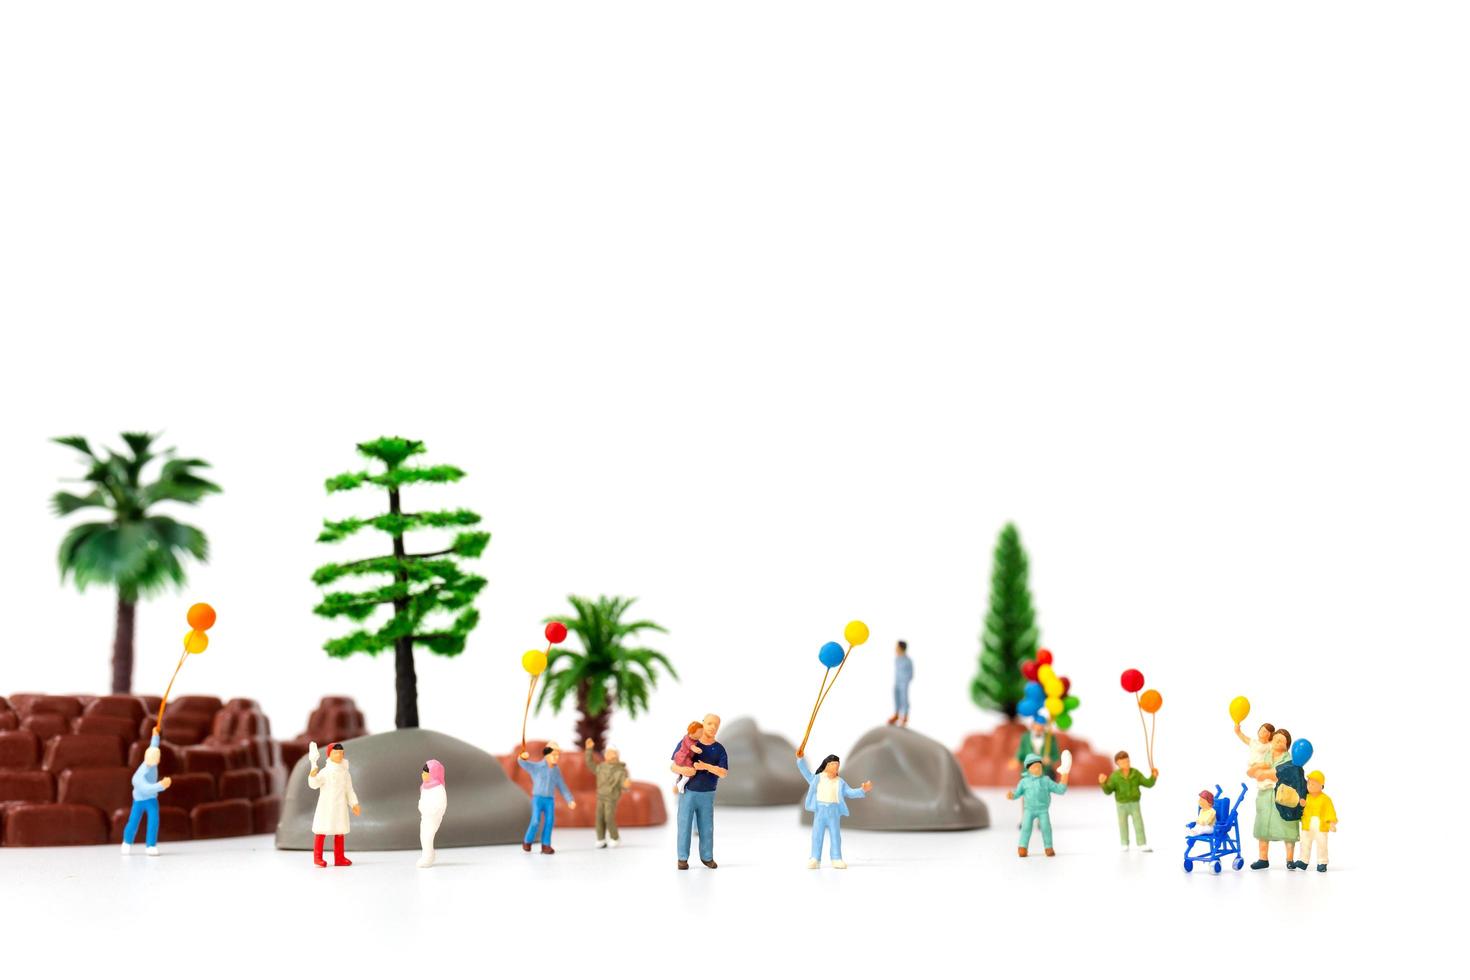 famille miniature tenant des ballons dans le parc, concept de la journée mondiale des enfants photo